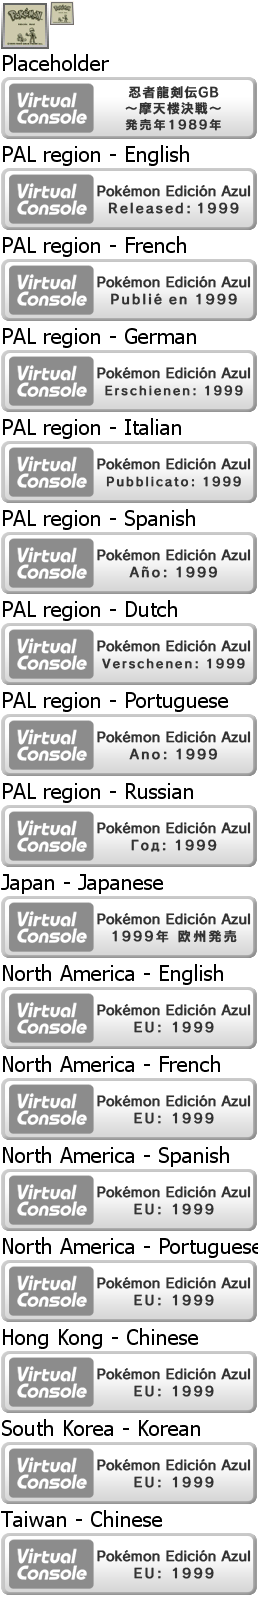 Virtual Console - Pokémon Edición Azul